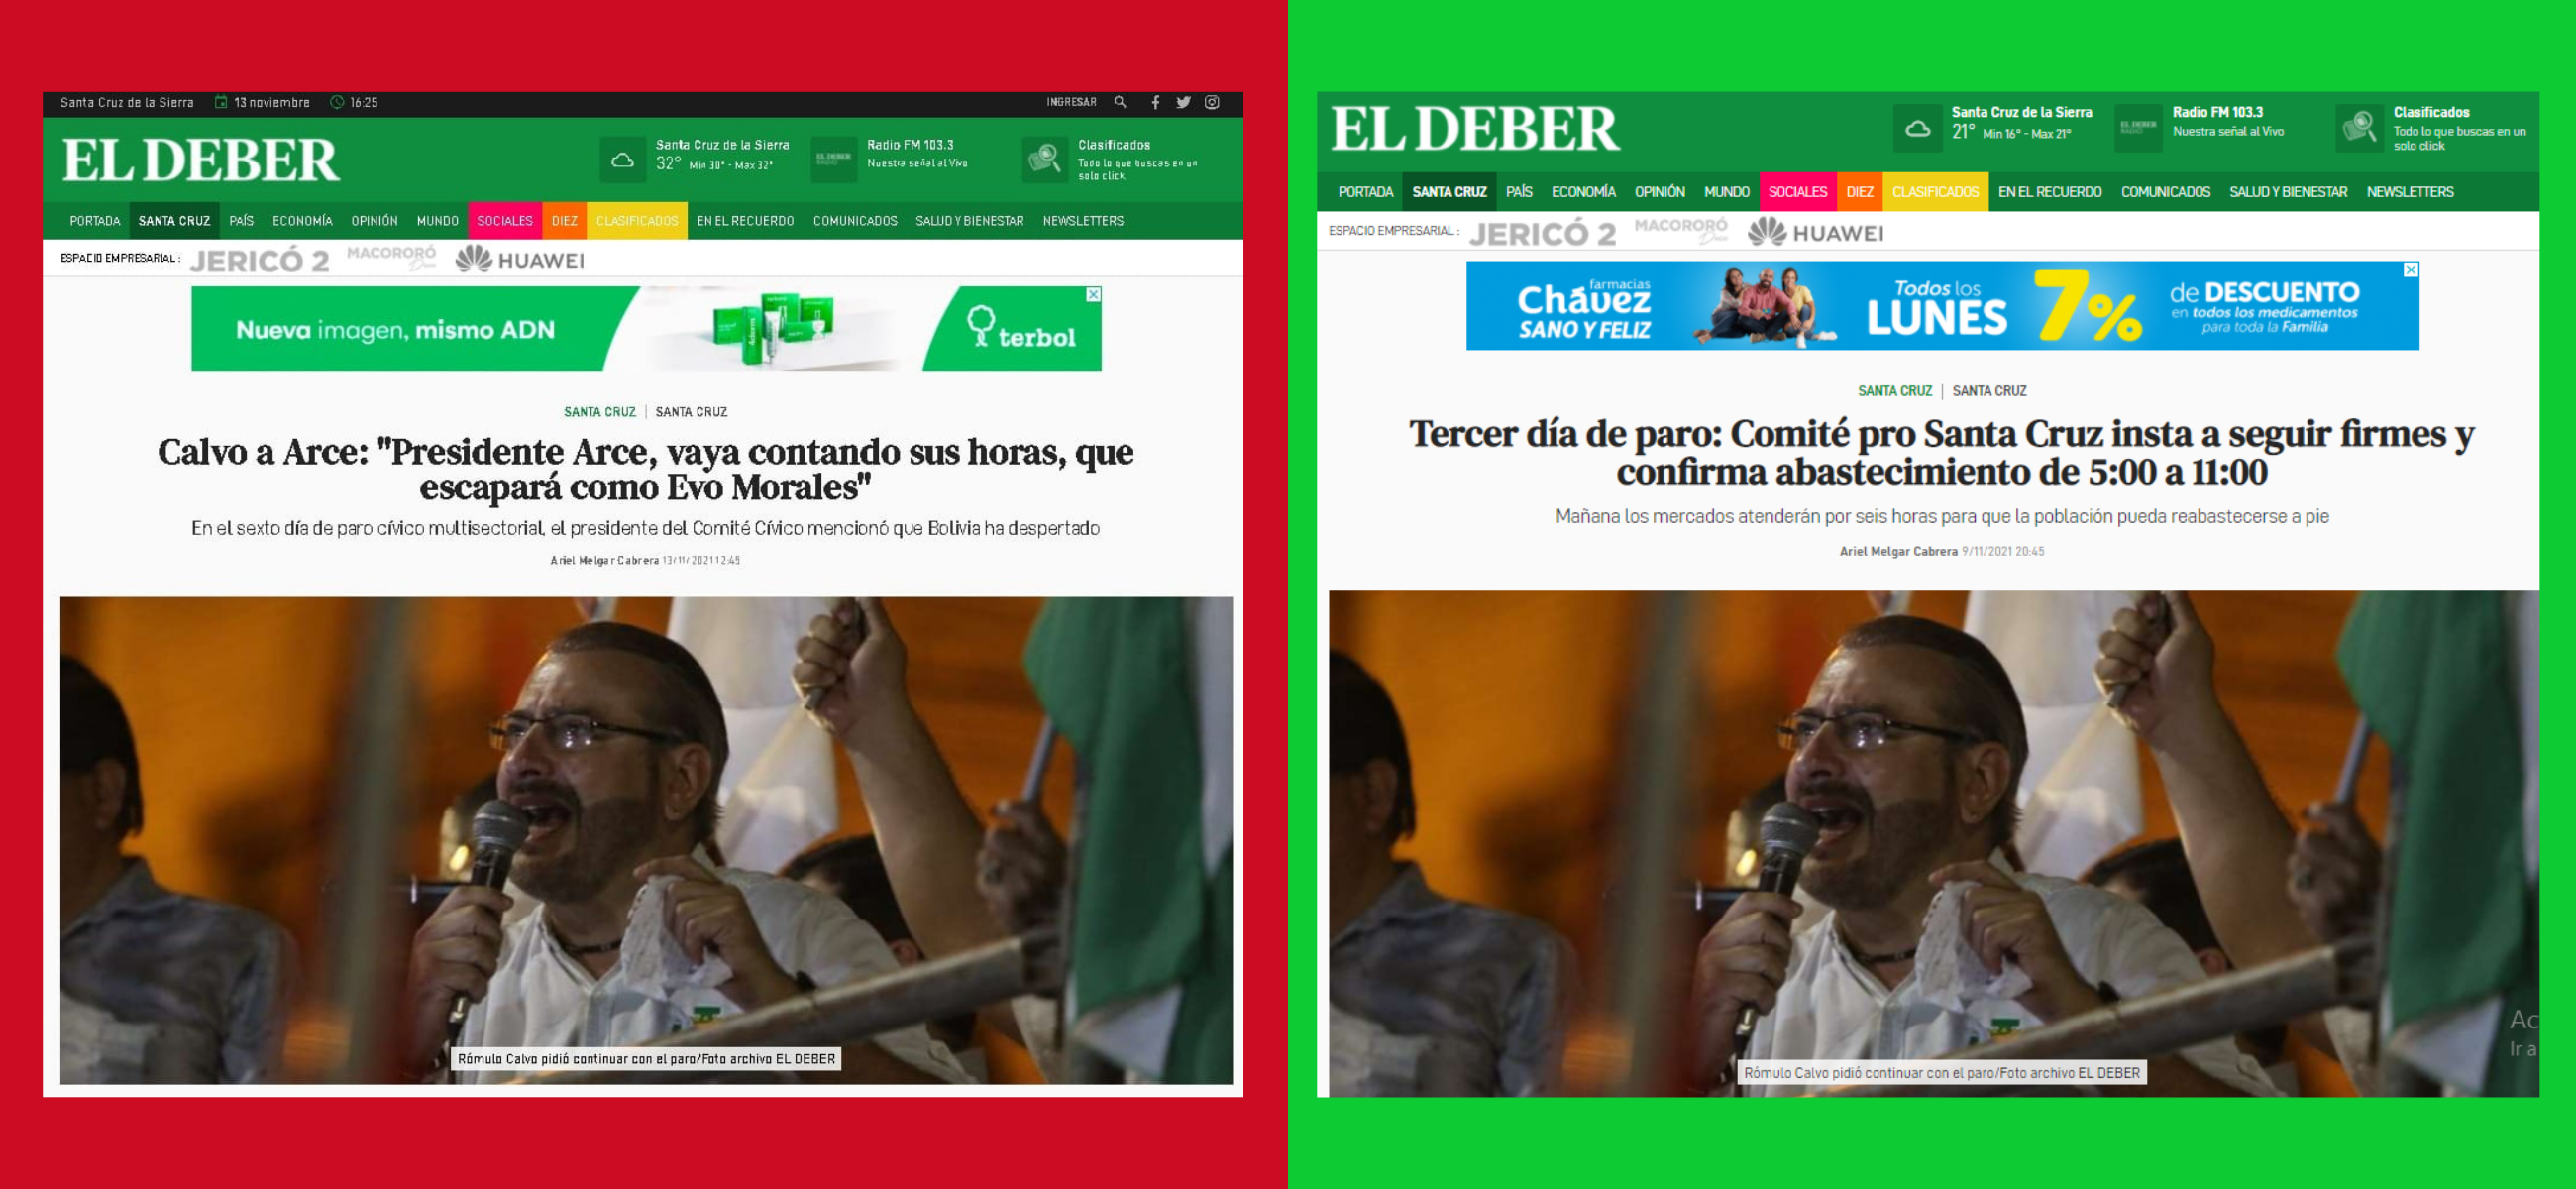 Comparación entre la publicación falsa y una original de El Deber.